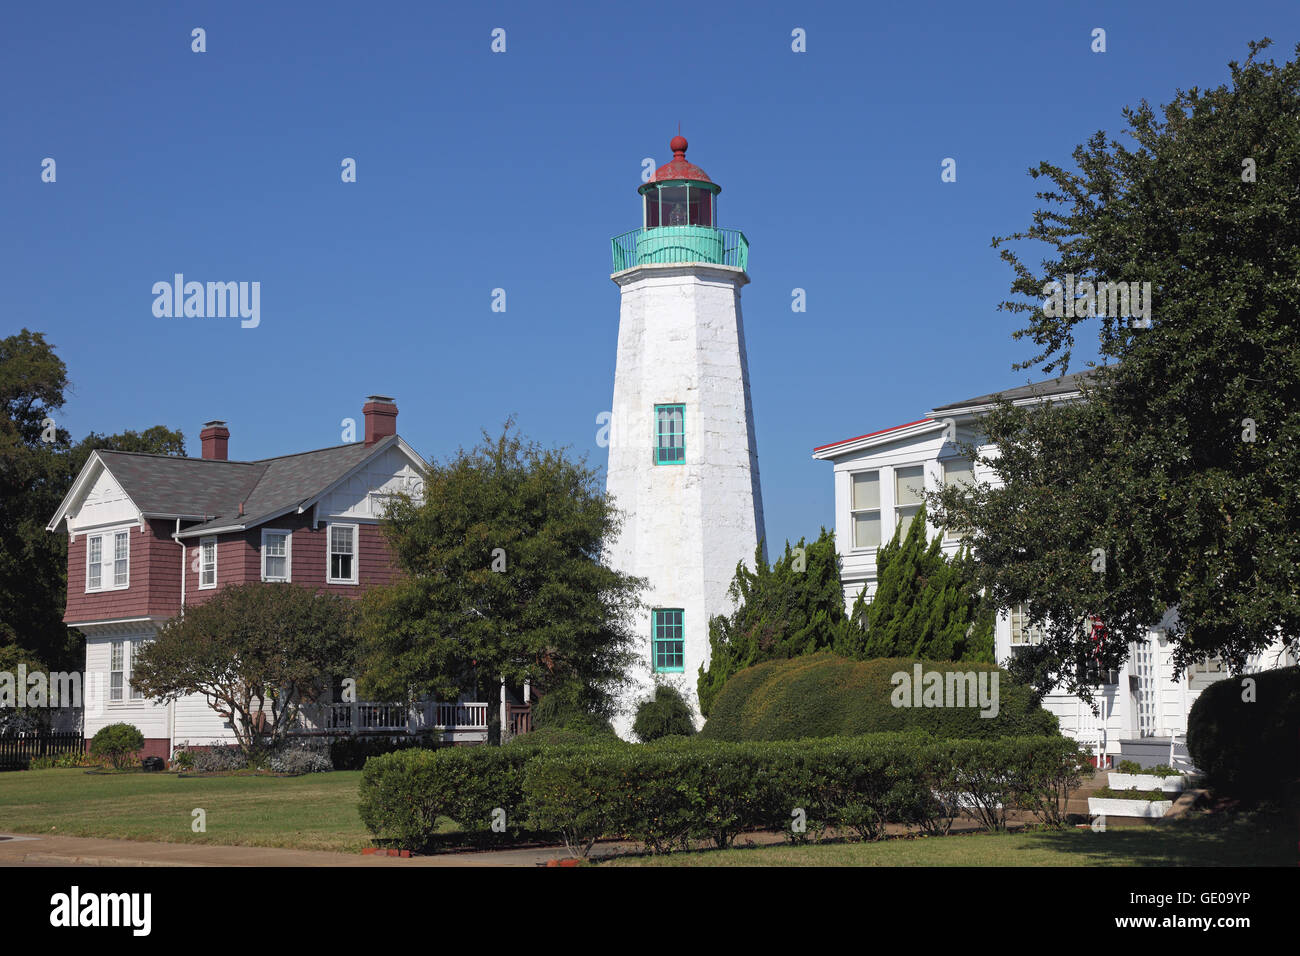 Geographie/Reisen, USA, Virginia, Hampton, alten Punkt Komfort Leuchtturm, gebaut 1802, Außenansicht, Additional-Rights - Clearance-Info - Not-Available Stockfoto